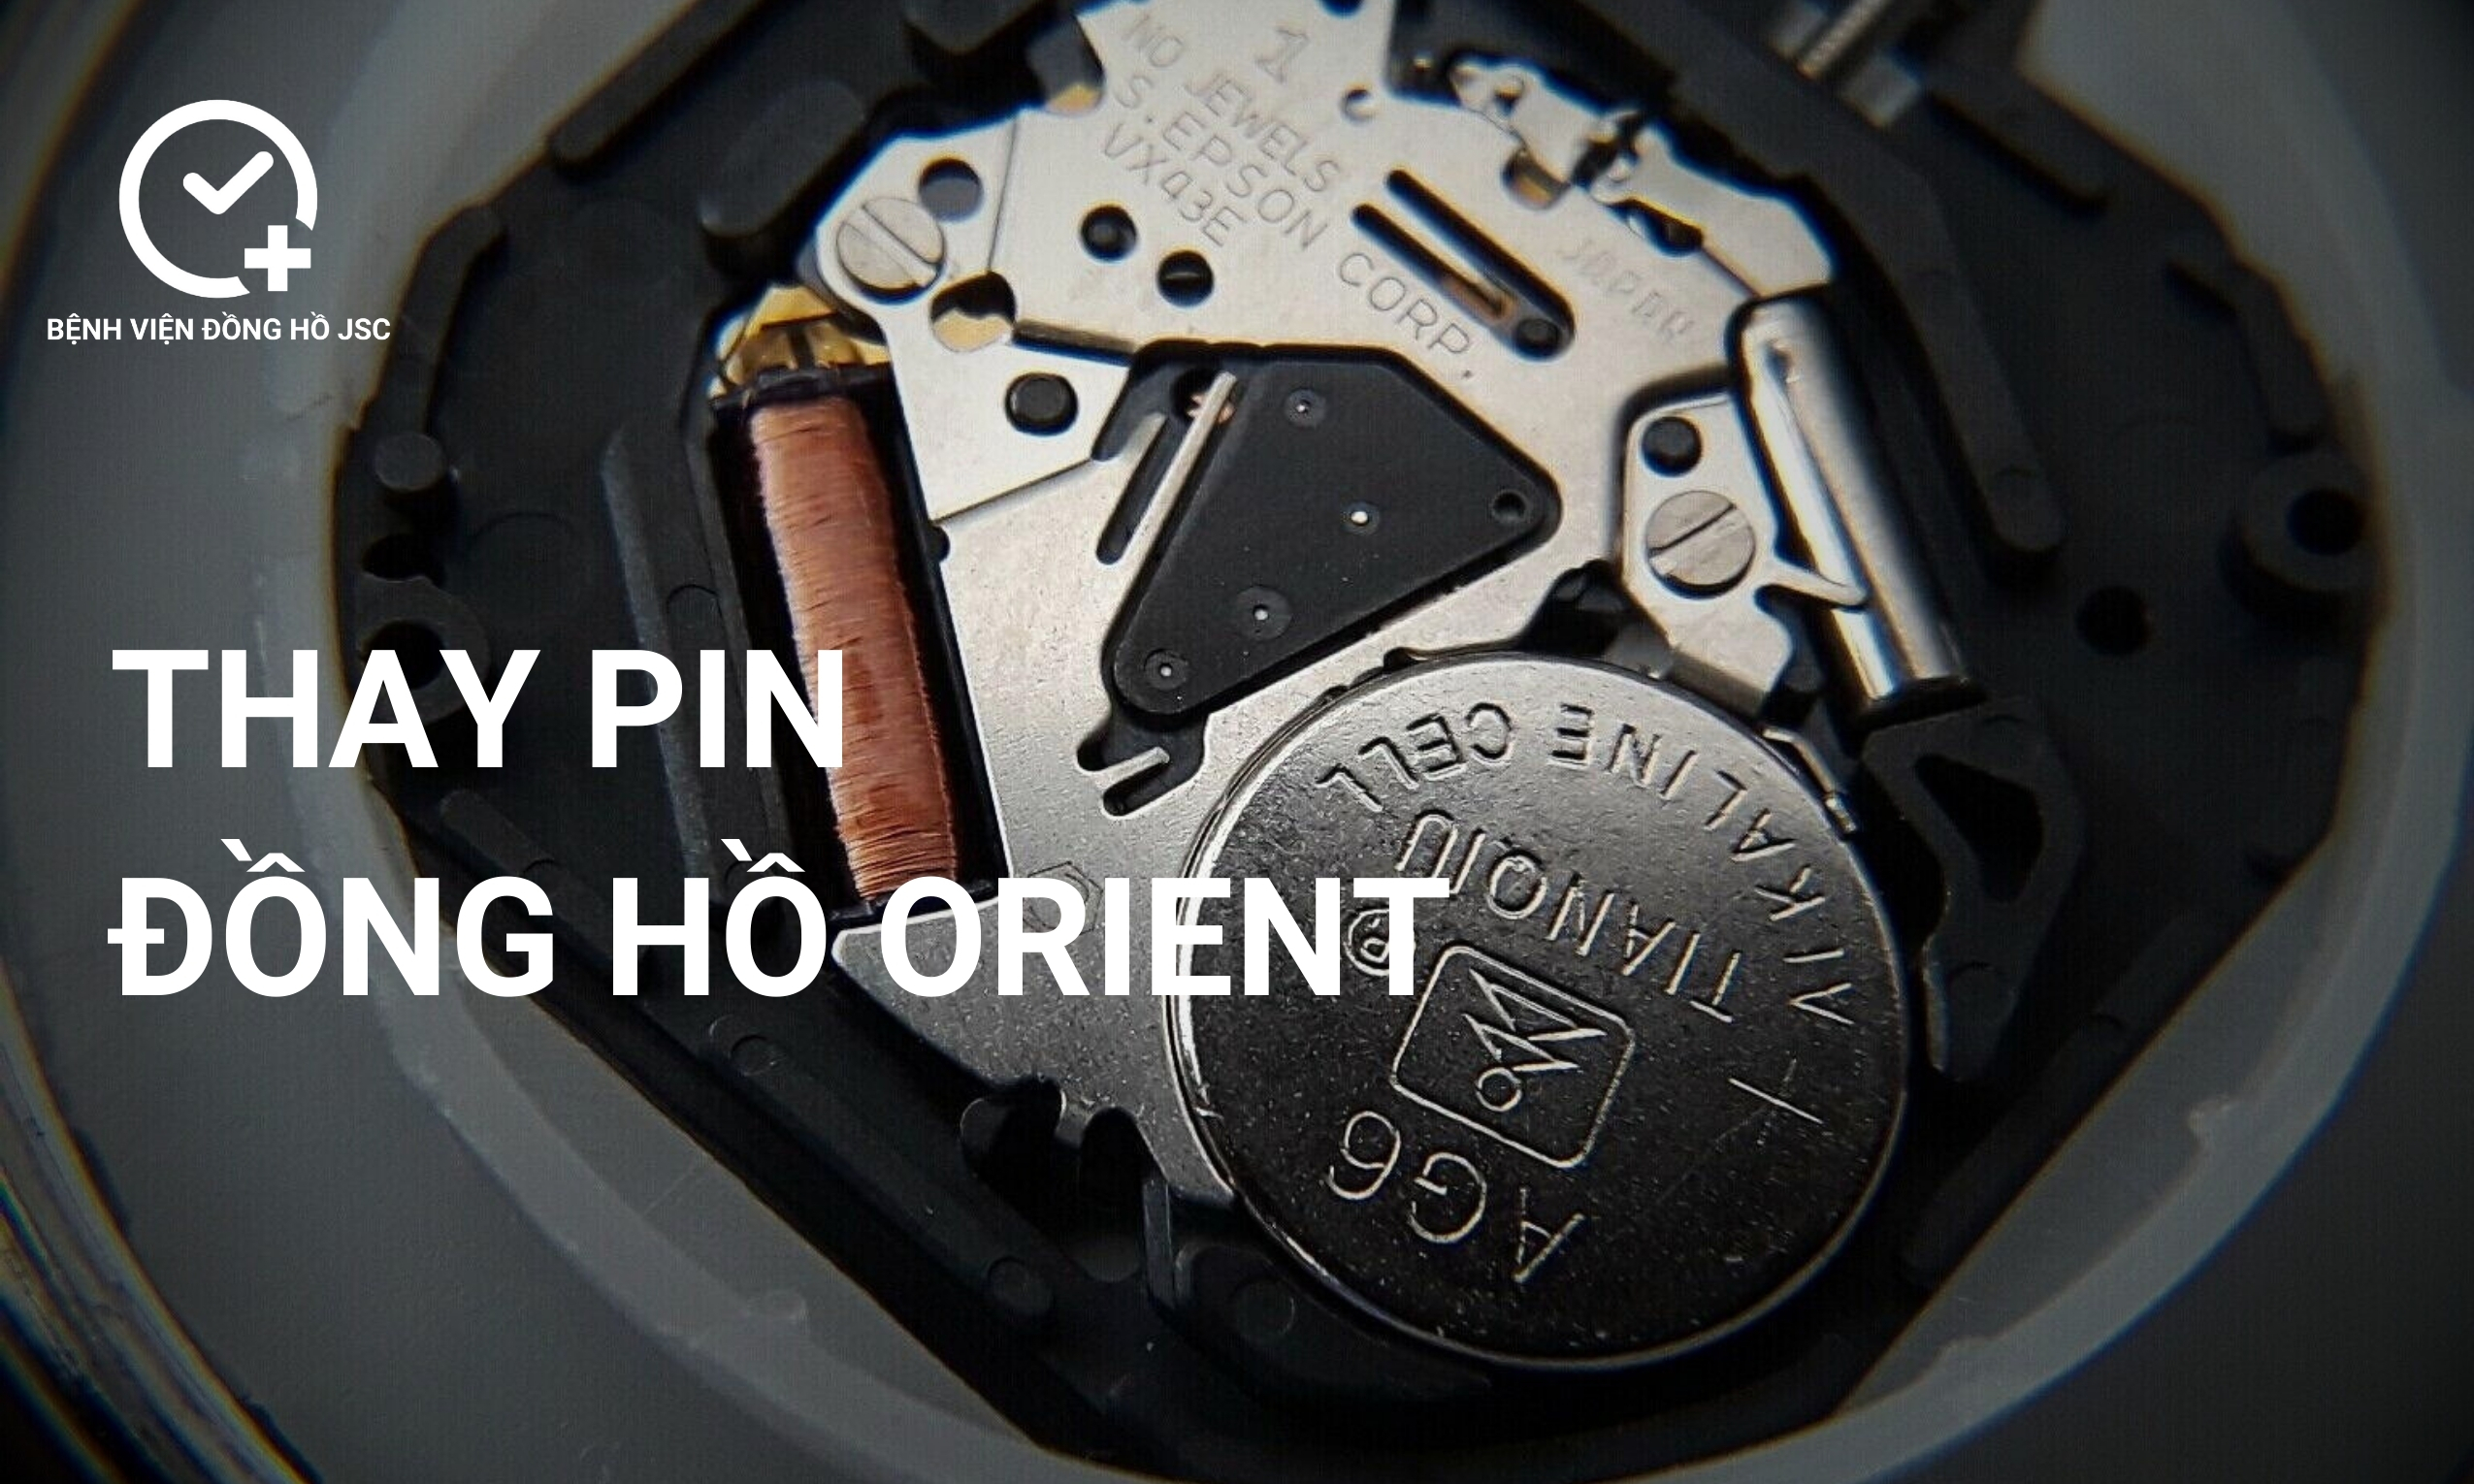 Thay pin đồng hồ Orient chính hãng đảm bảo an toàn, chống nước tốt nhất